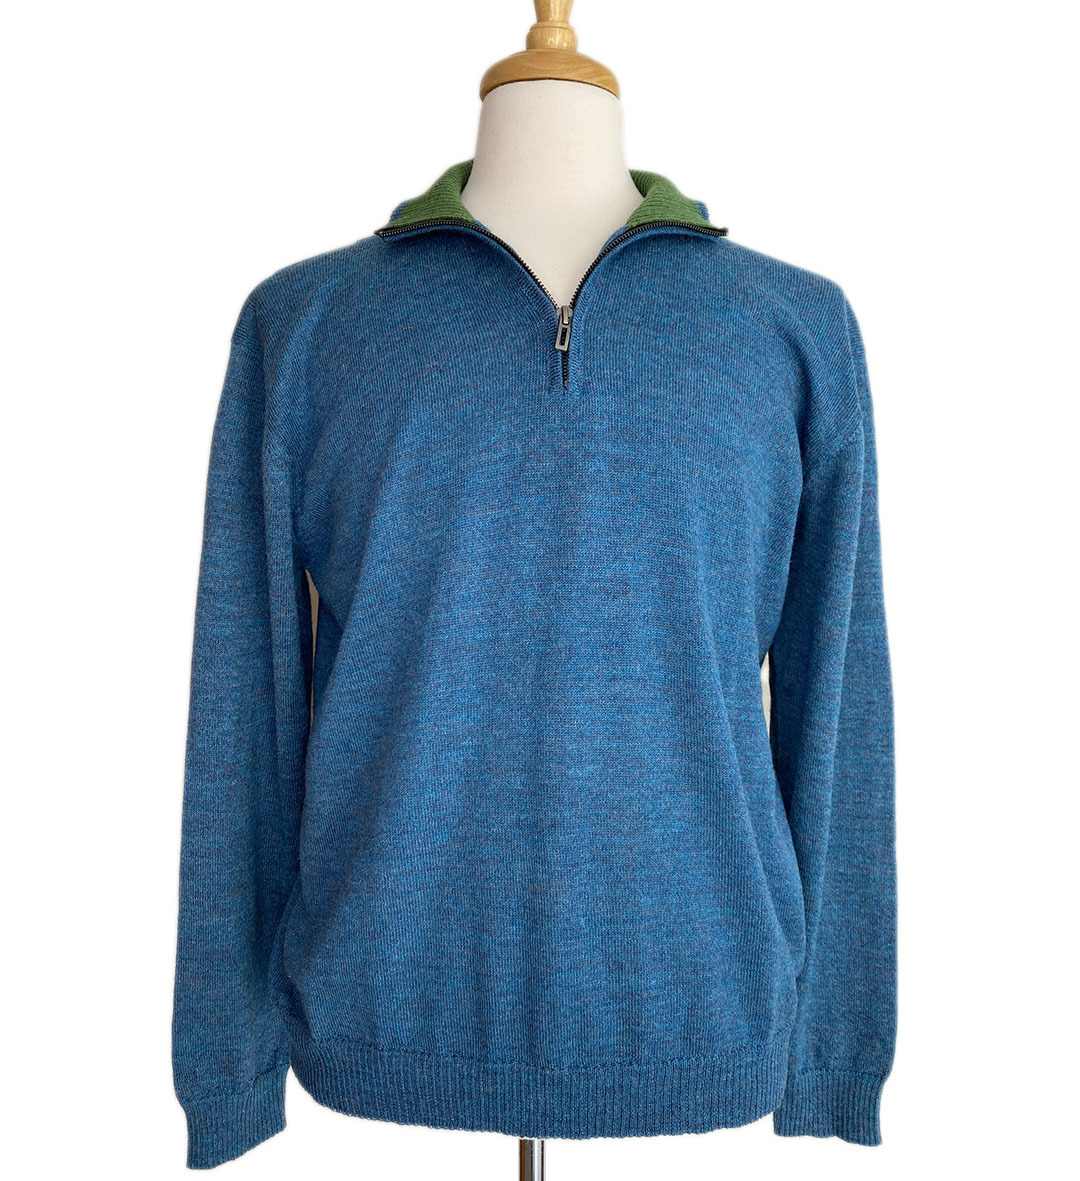 Brent Half Zip Sweater - Blue/Green - 1